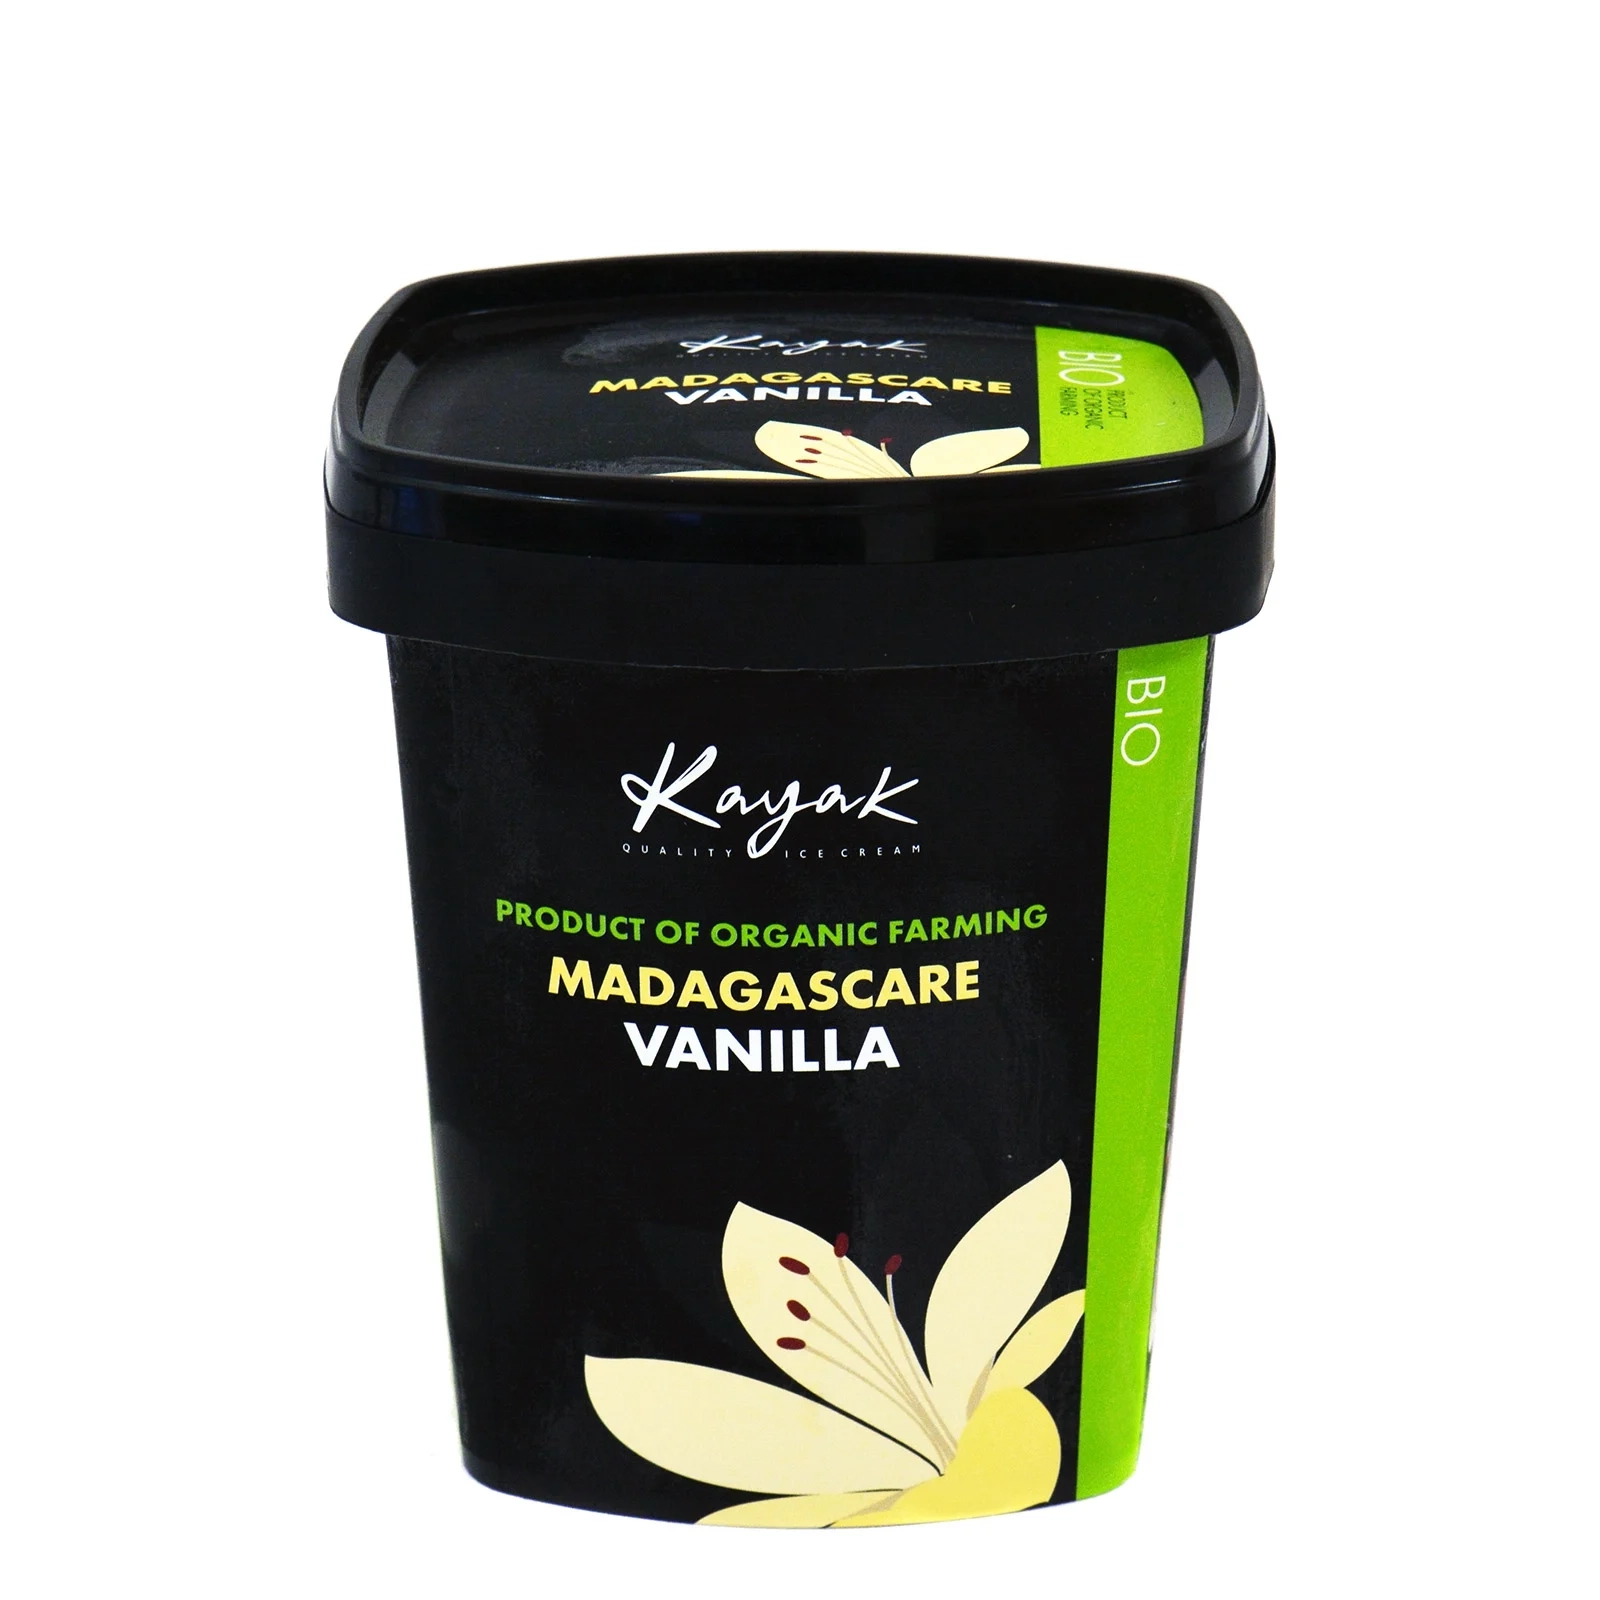 Vanilla Madagascar ice cream